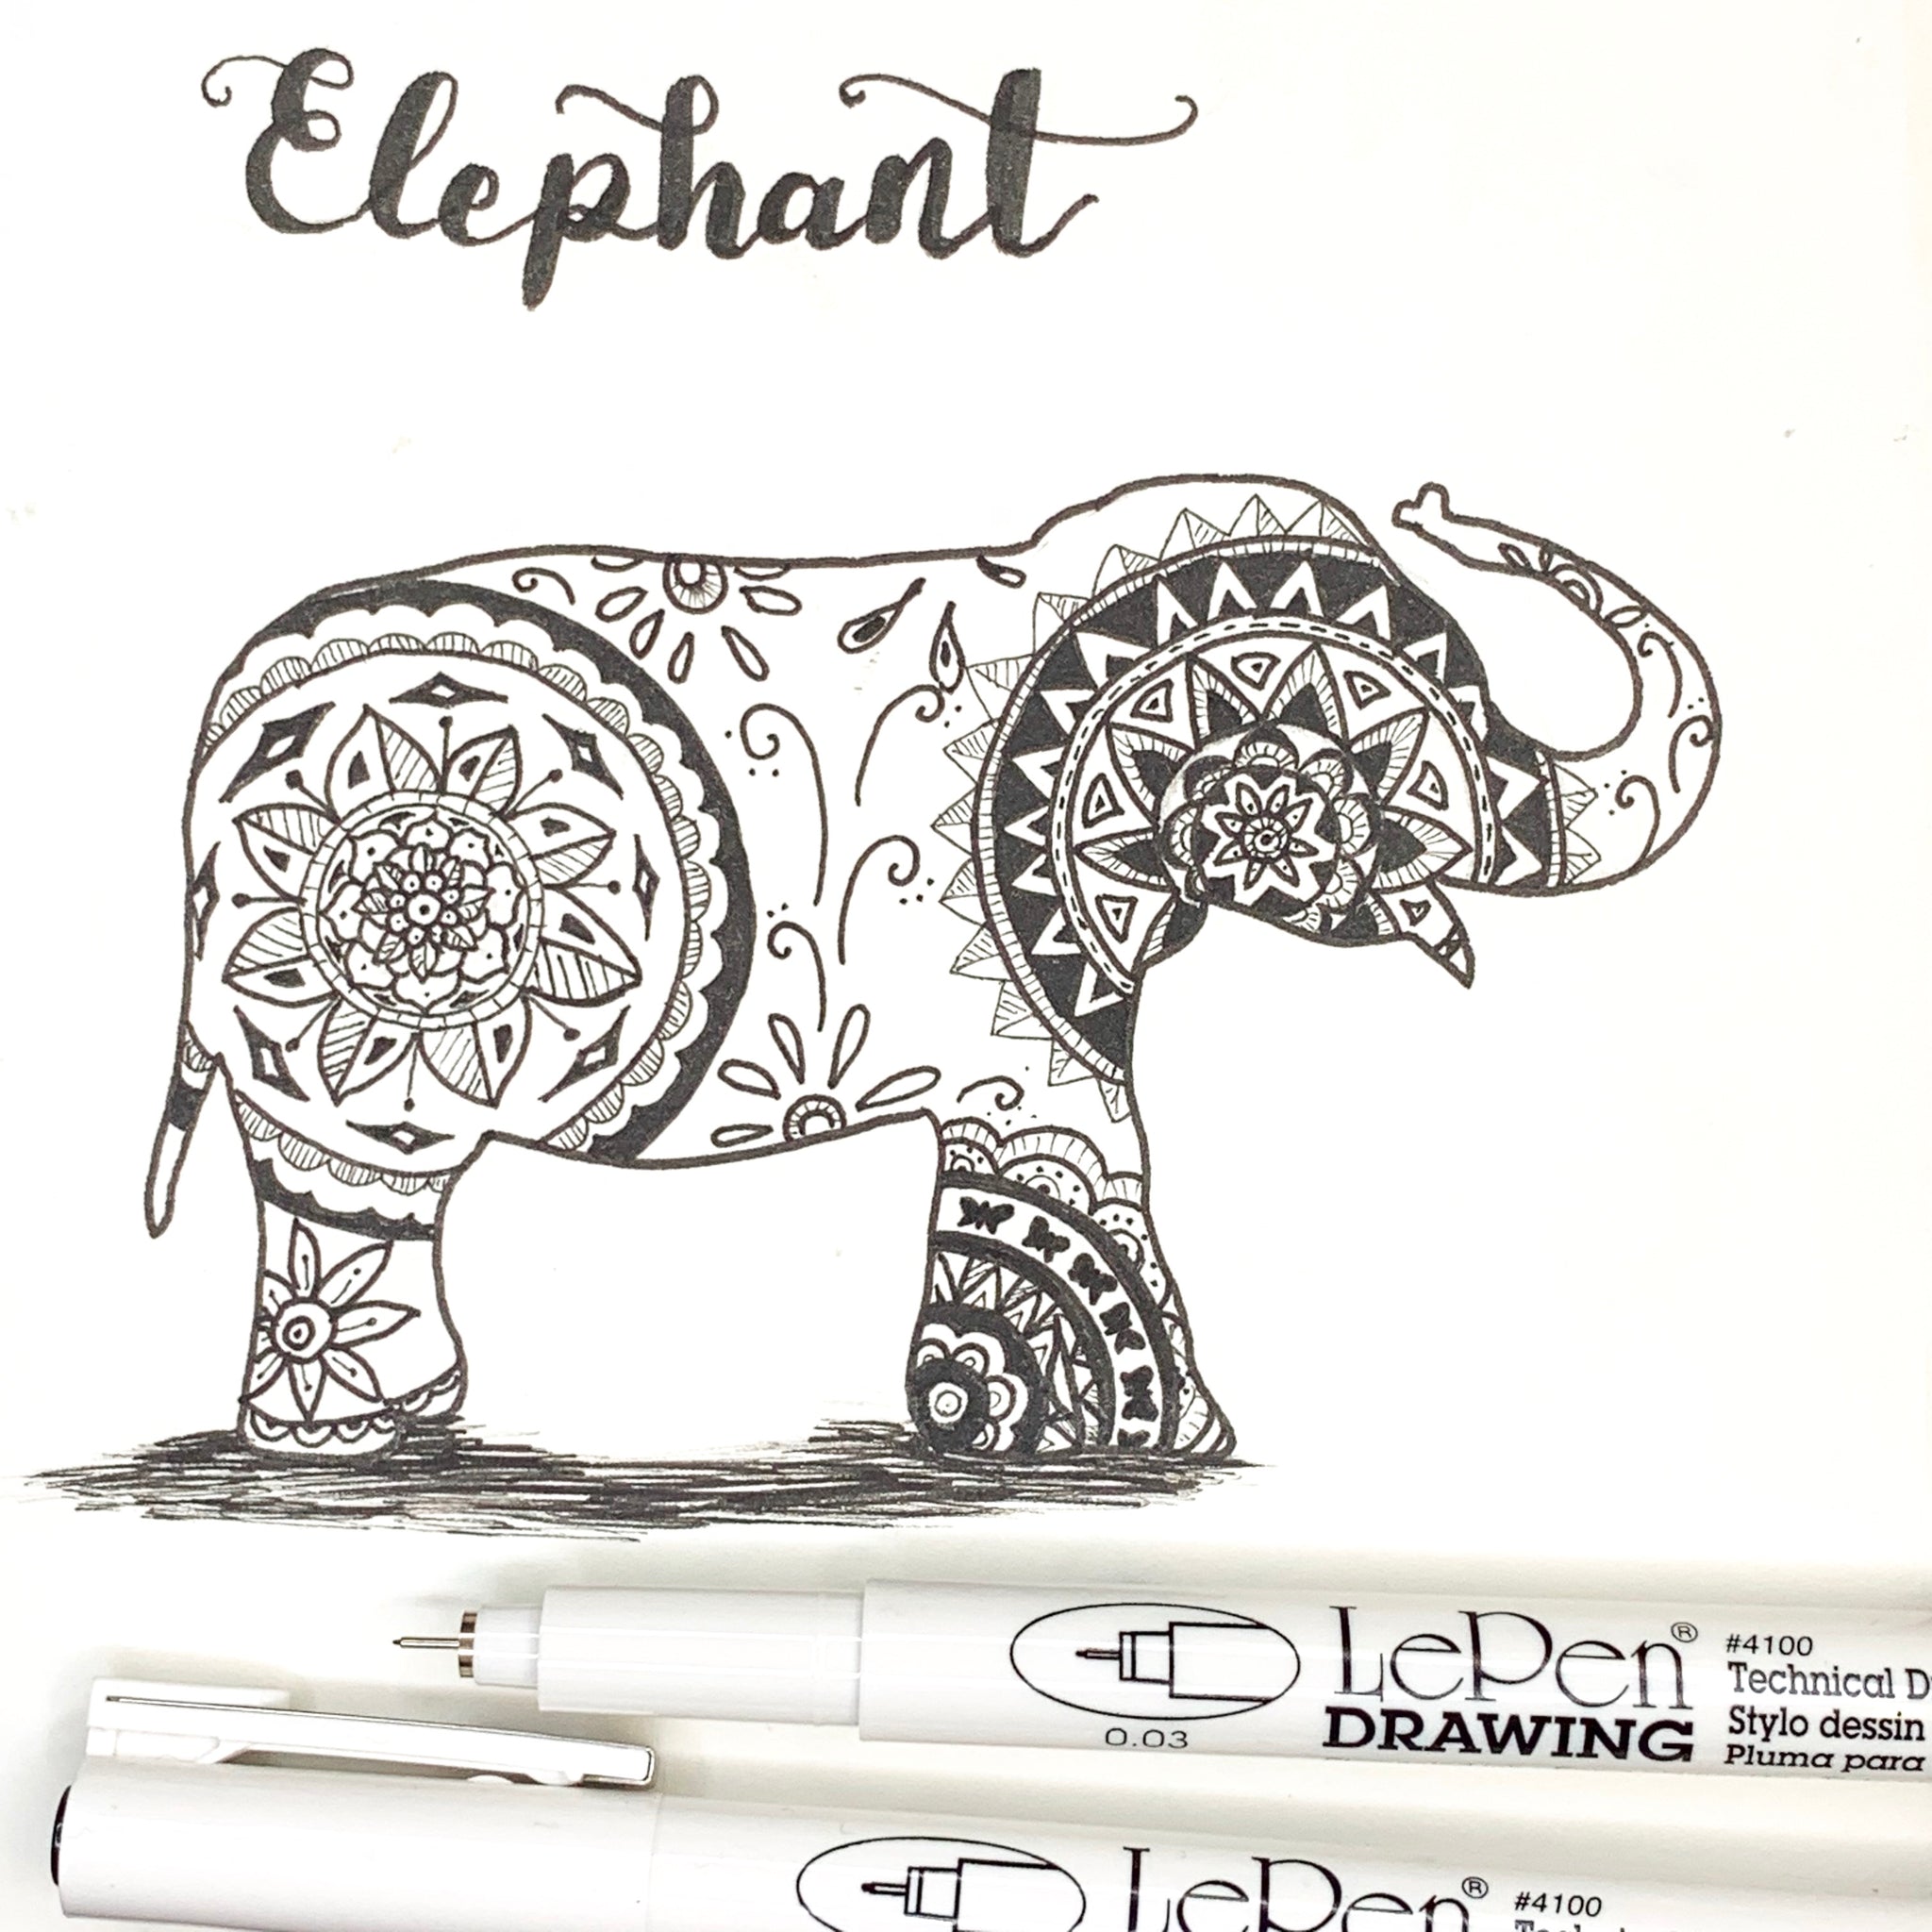 LePen Technical Drawing Pen Set/8  Spokane Art Supply – spokane-art-supply